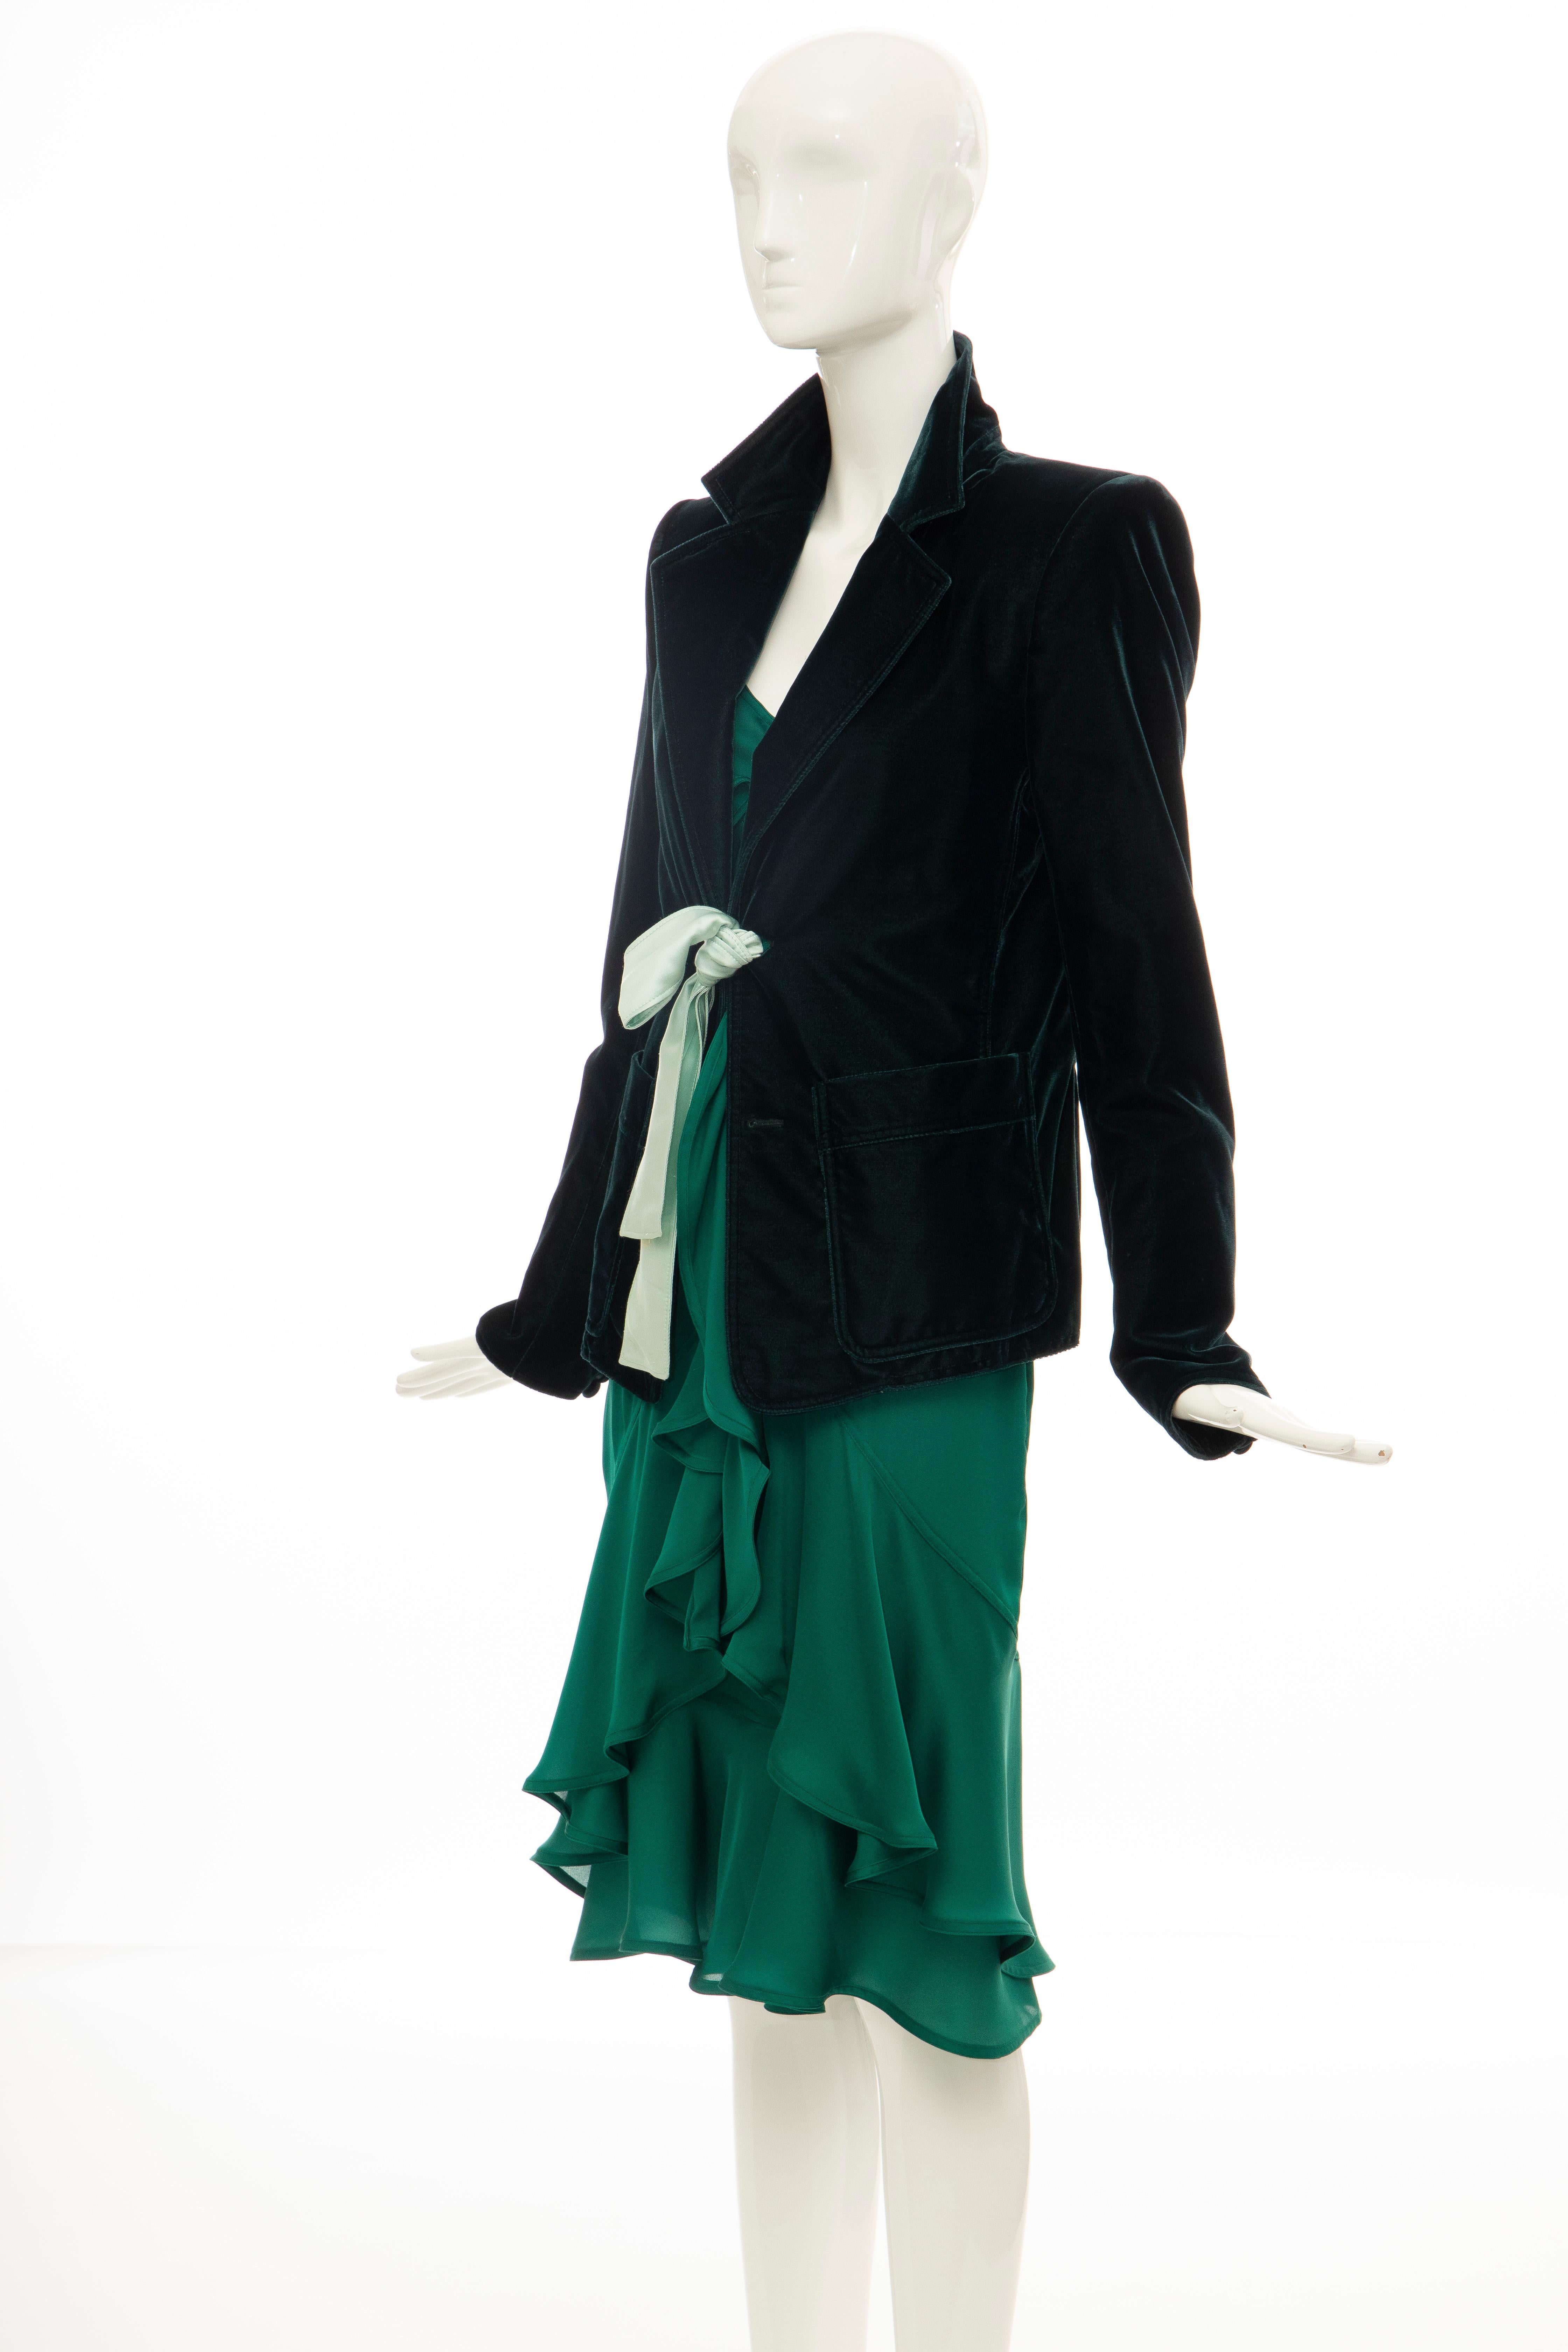 Tom Ford for Yves Saint Laurent Emerald Green Velvet Silk Dress Suit,  Fall 2003 4